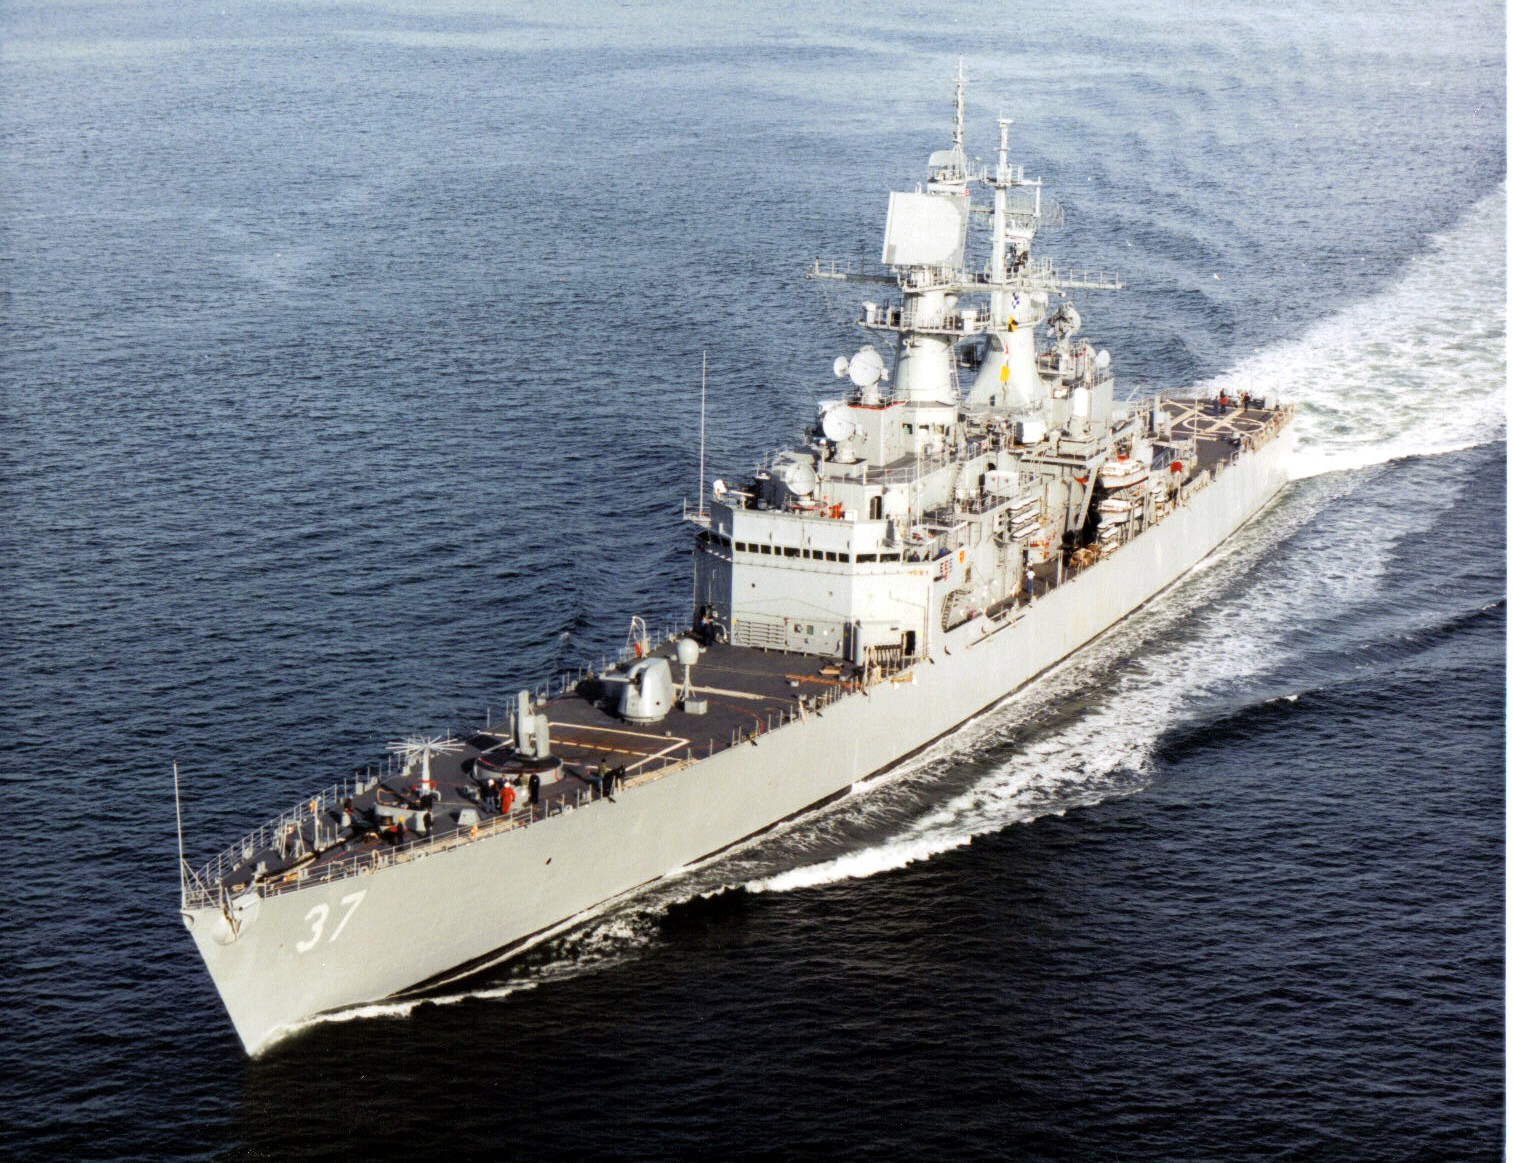 紧随莱希级建造的 cg-26 贝尔纳普级,同样是 9 艘,首舰 1964 年服役.